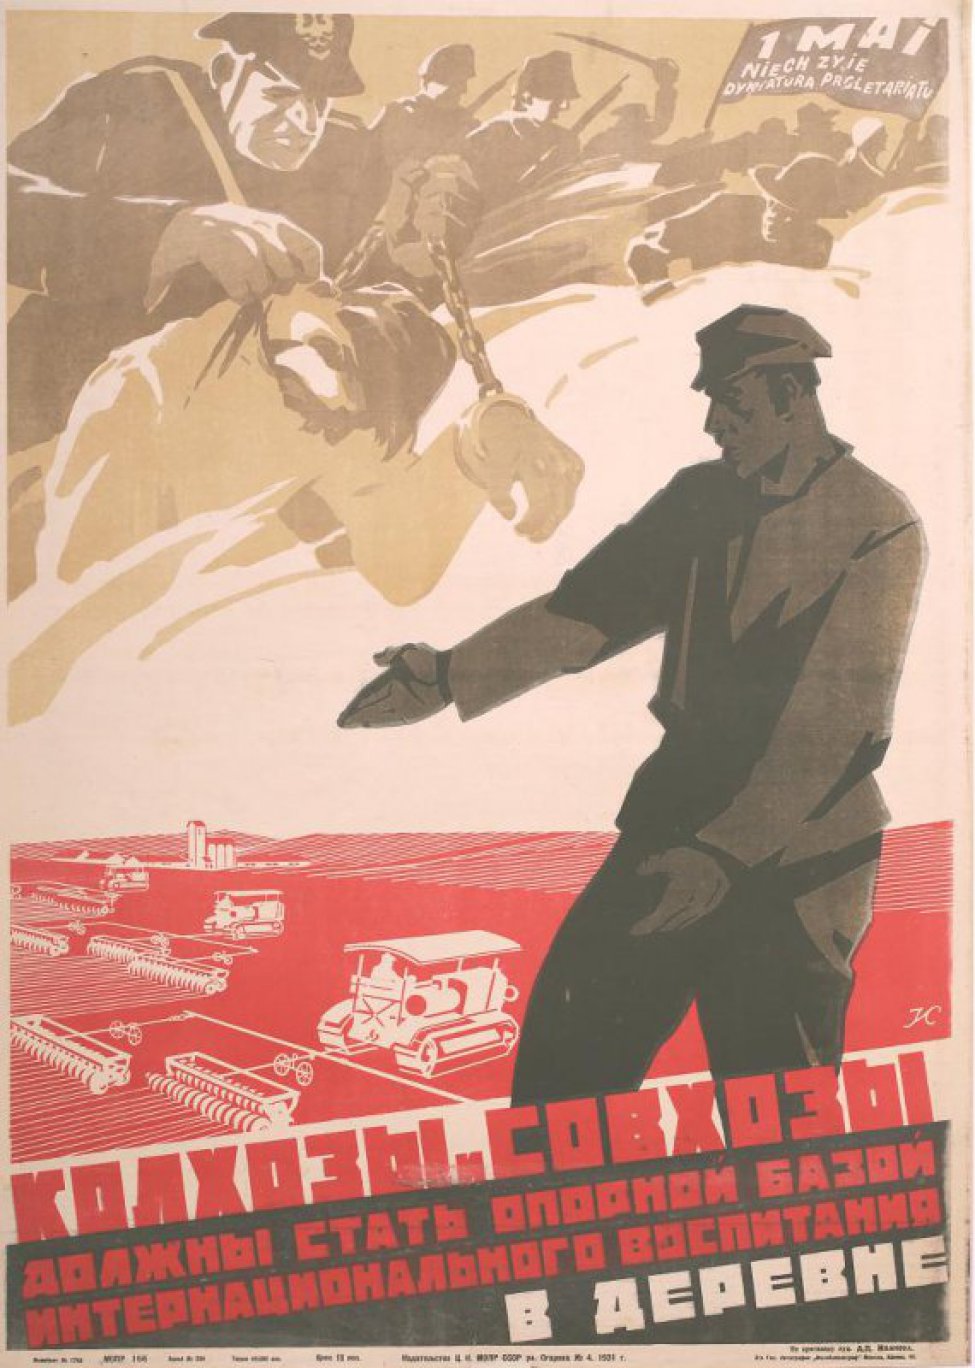 Изображен мужчина с вытянутой рукой указывающий на новостройки в Советской деревне.Наверху слева полицейский ведущий крестьянина, закованного в цепях.